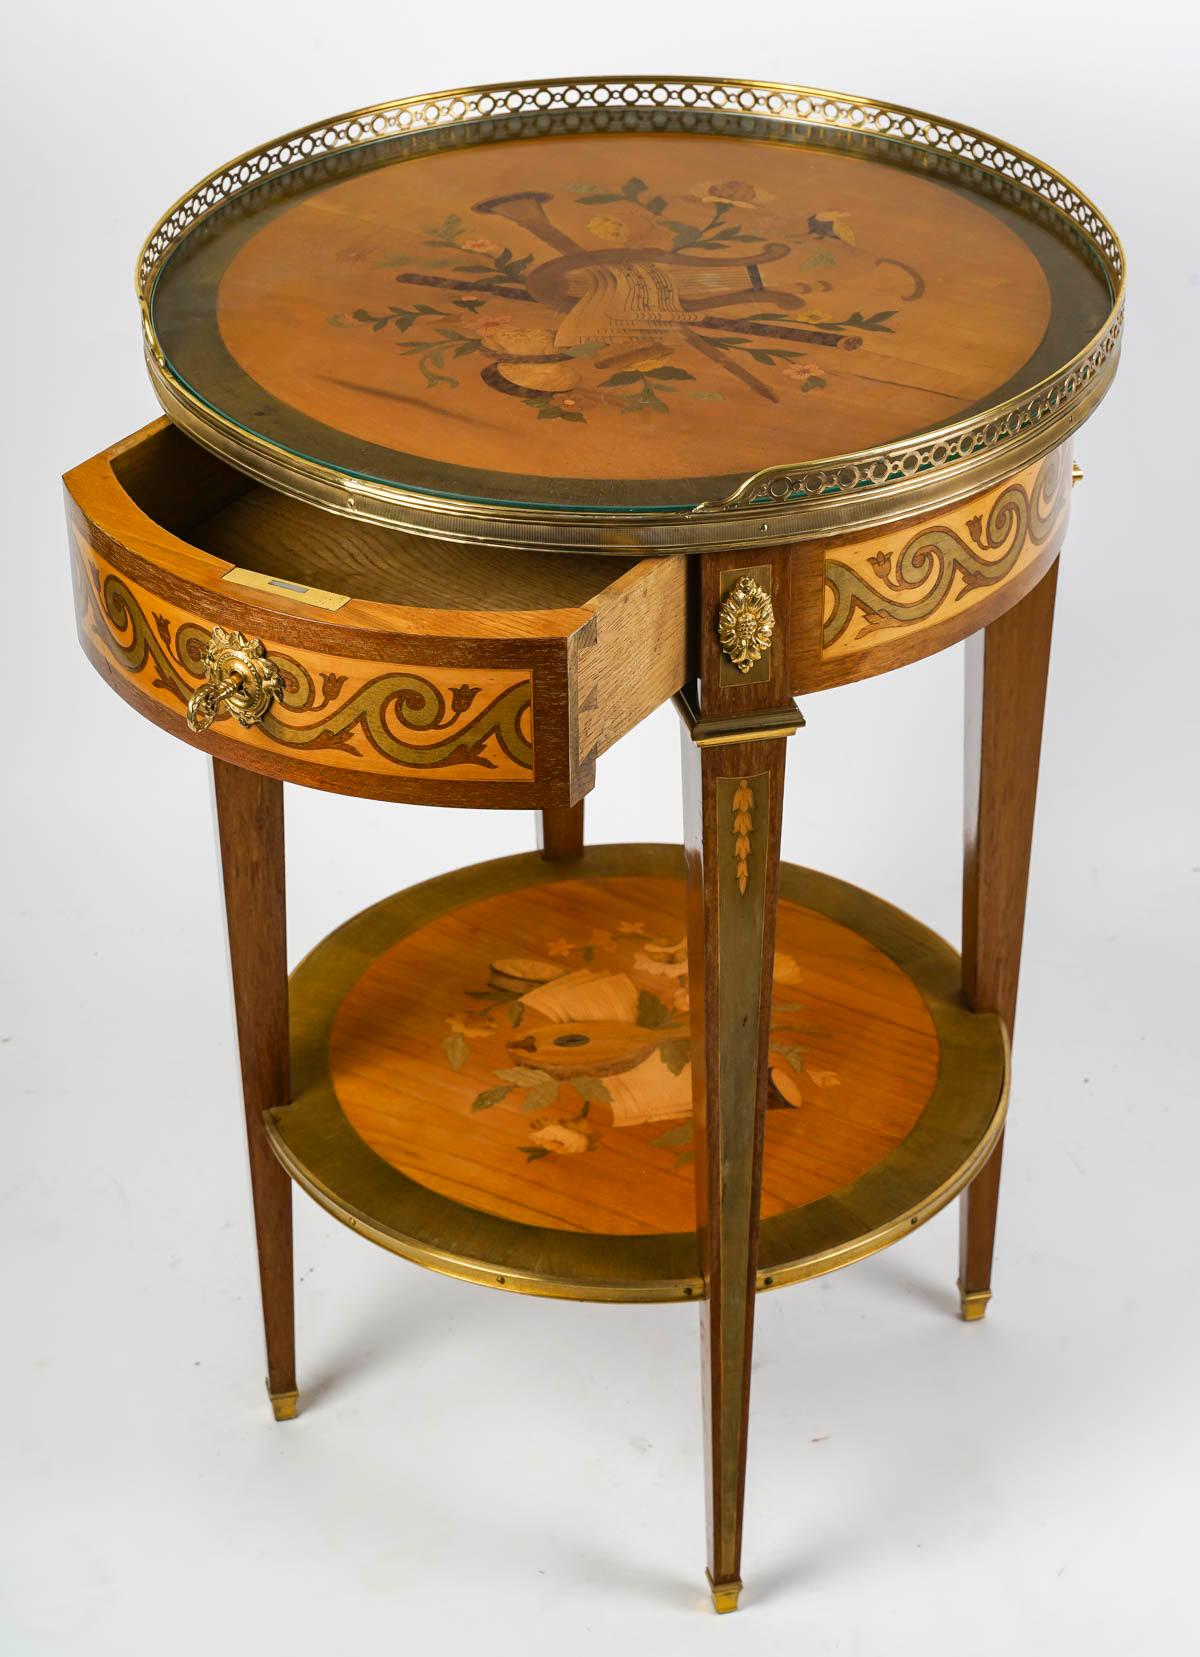 French Louis XVI Style Pedestal Table, 19th Century, Napoleon III Period.